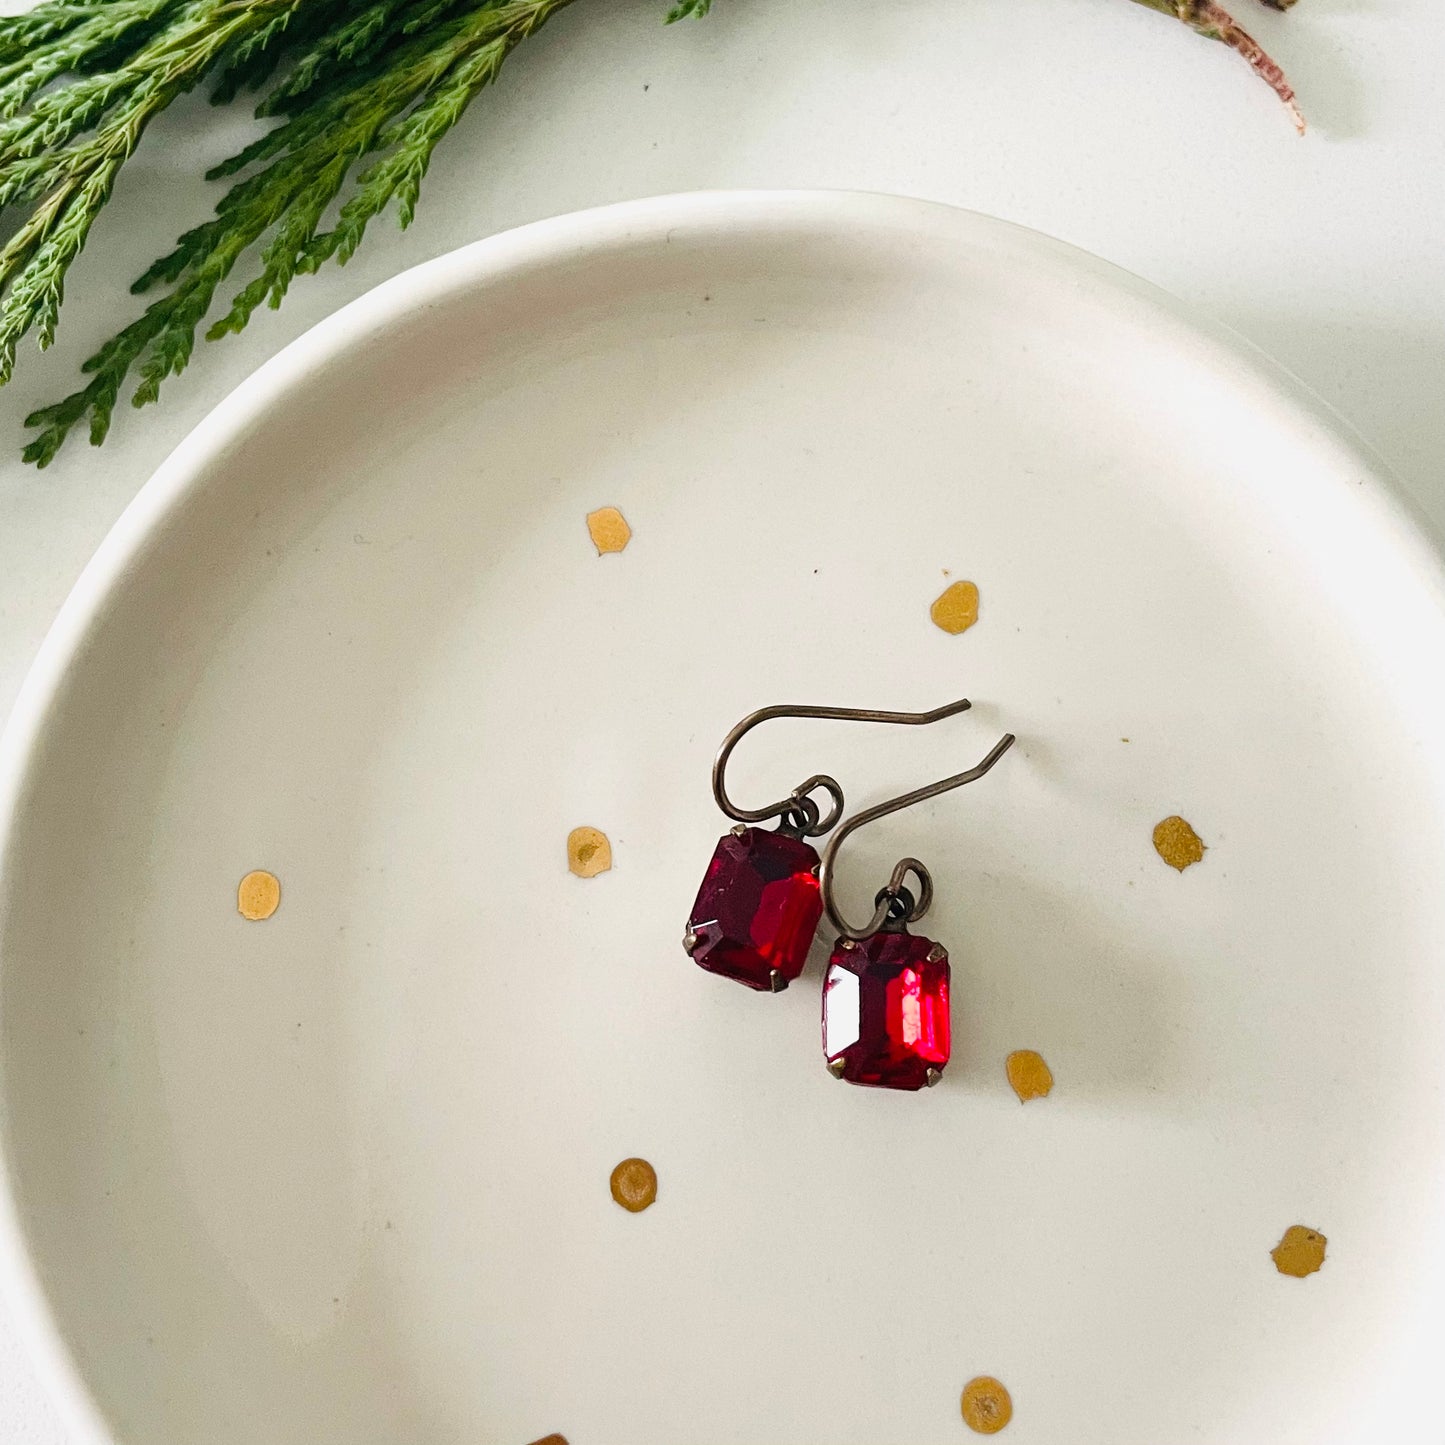 Ruby Red Vintage Rhinestone Earrings